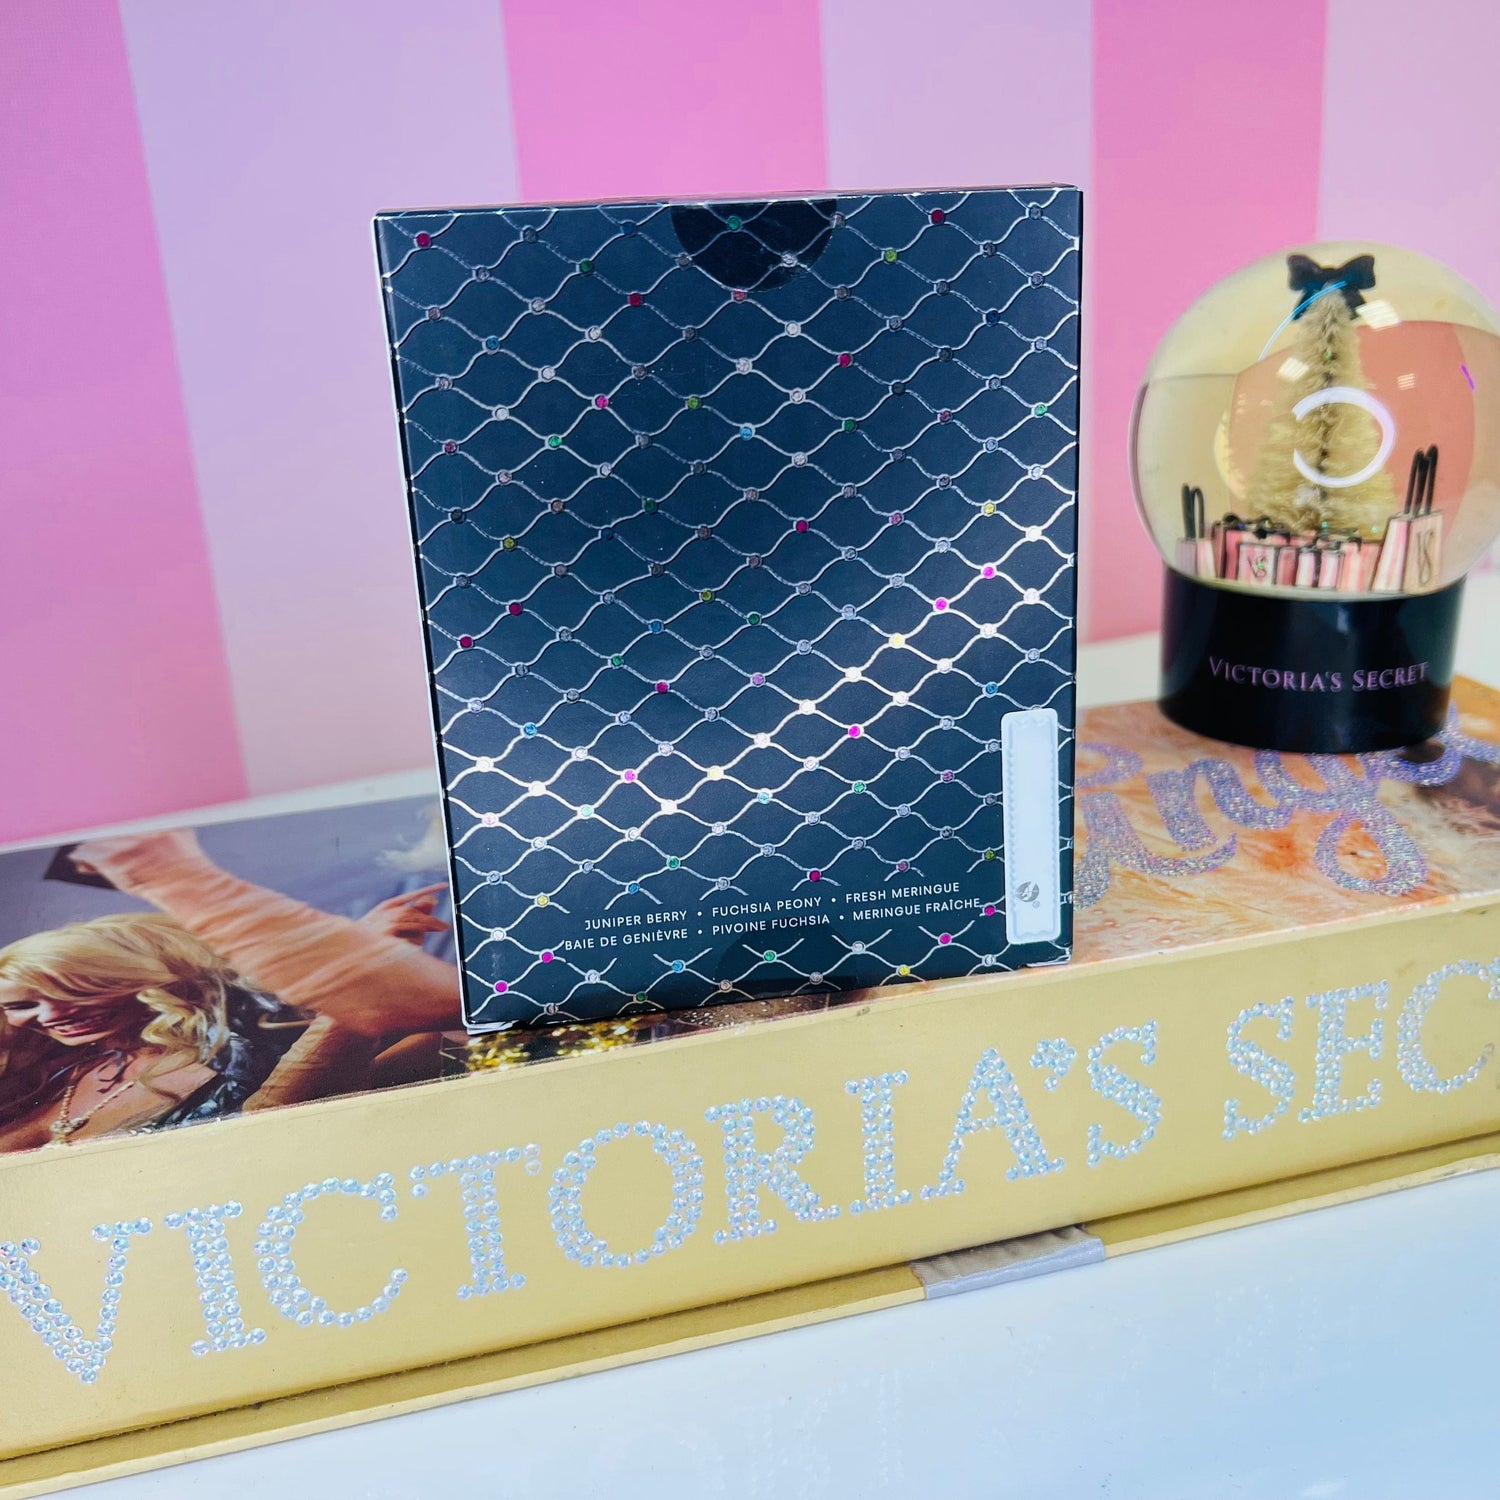 Parfém Tease Glam - 50ml / Nové se štítky - Parfémy Victoria’s Secret